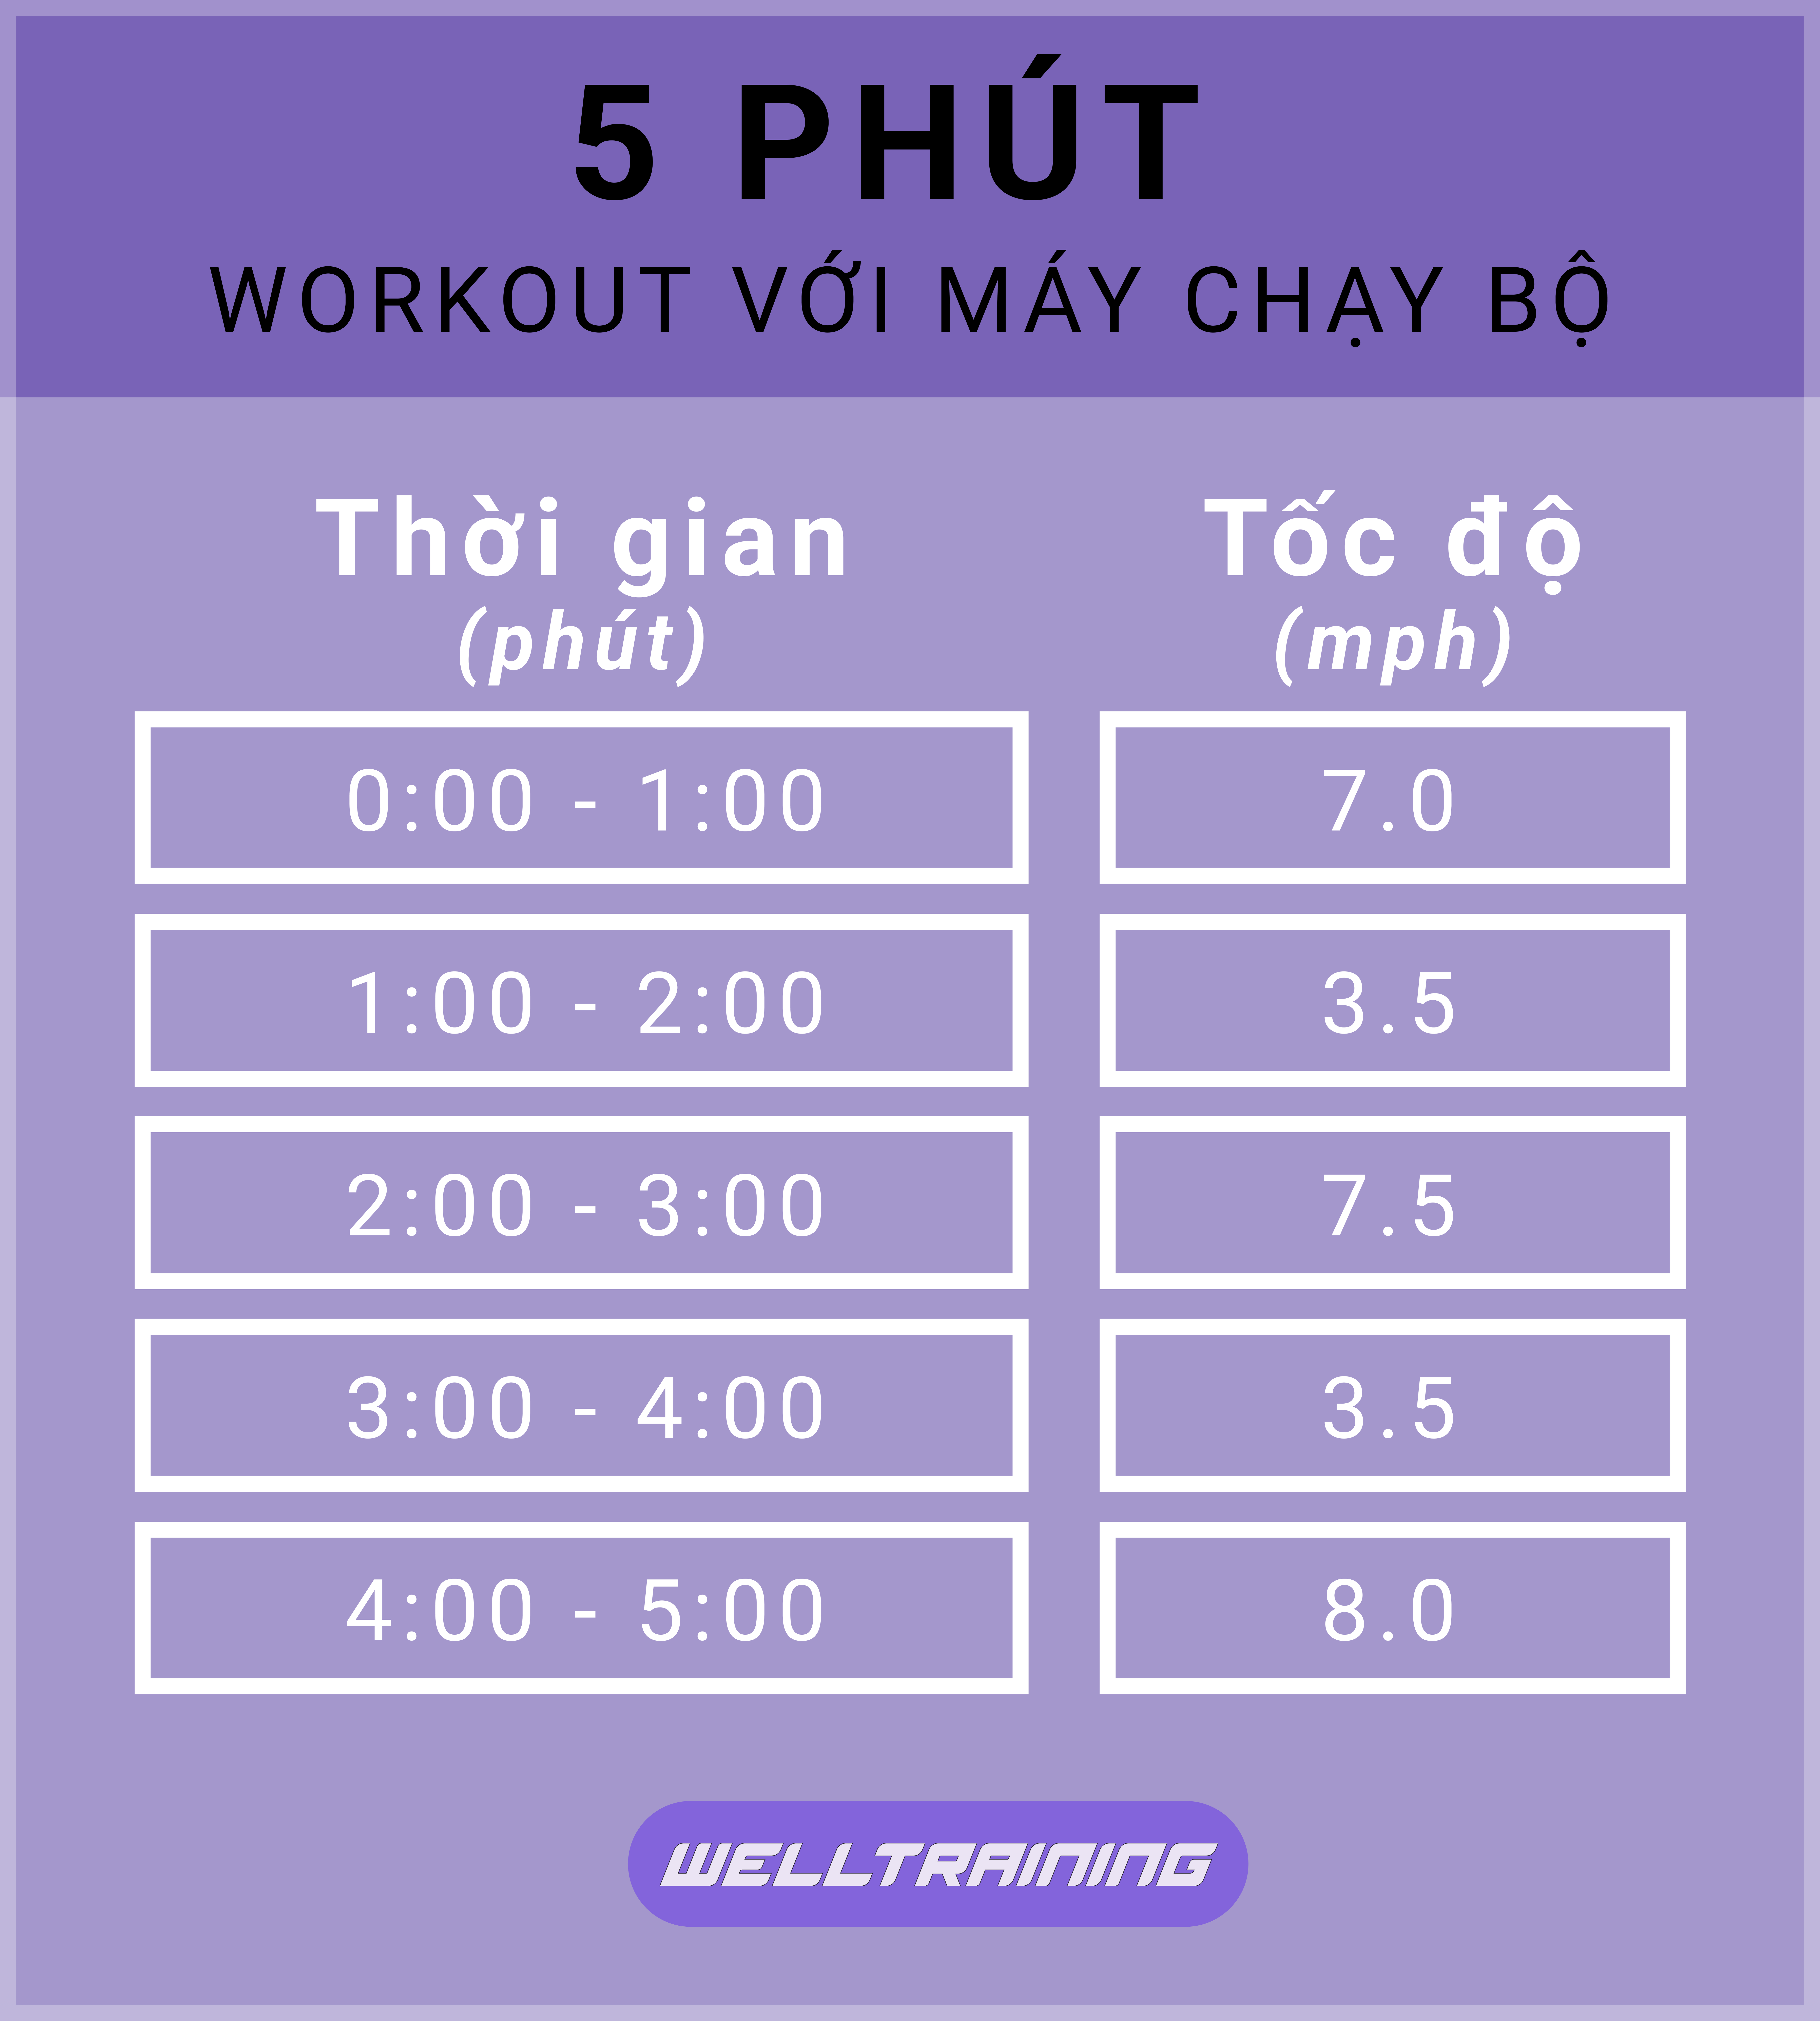 5-phut-workout-voi-may-chay-bo-